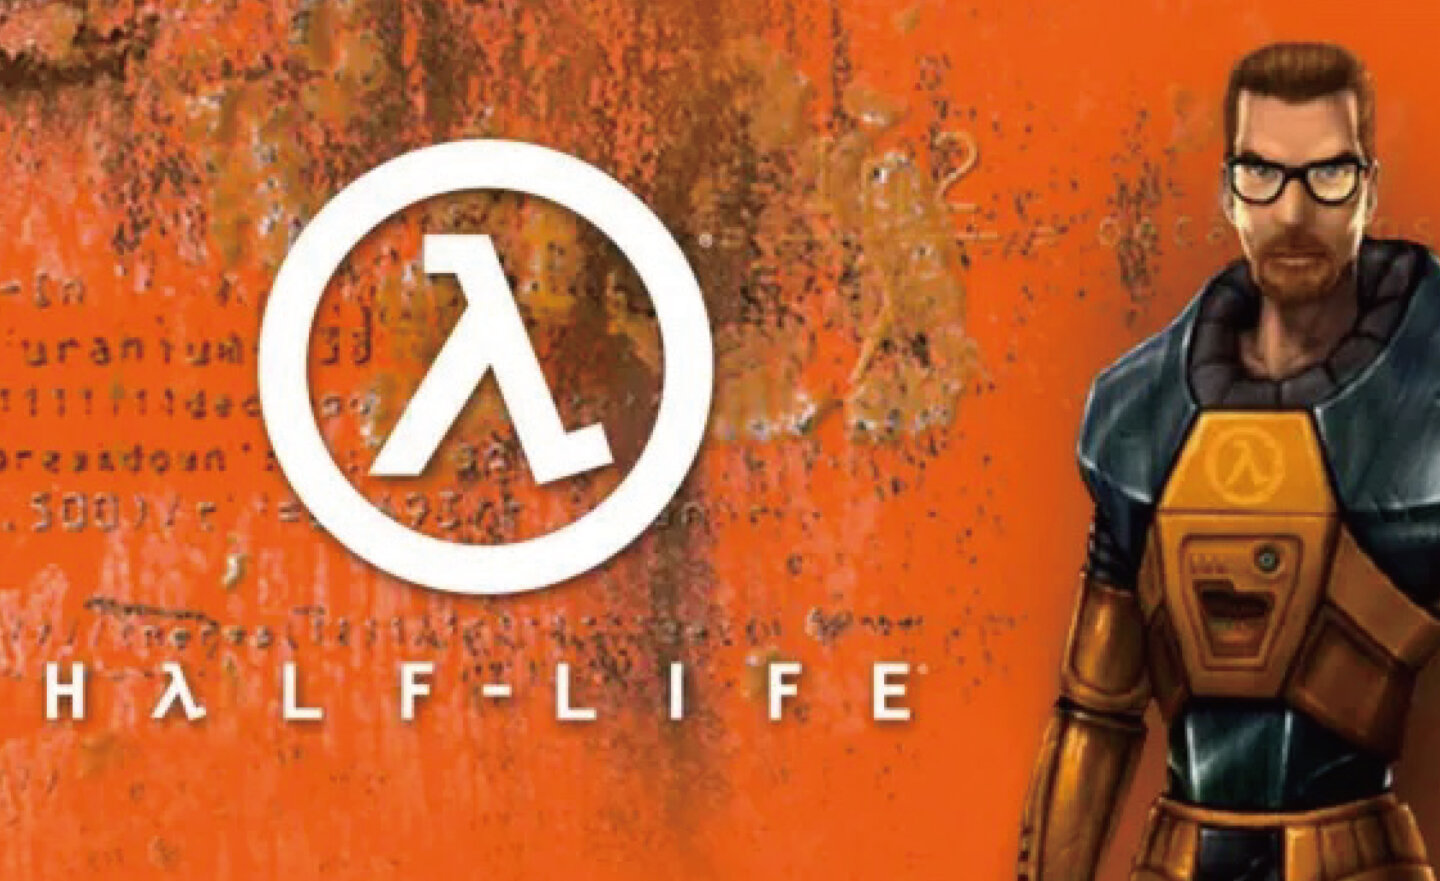 【限時免費】Steam 放送《Half-Life 戰慄時空》， 11 月 21 日凌晨 2:00 前永久保留